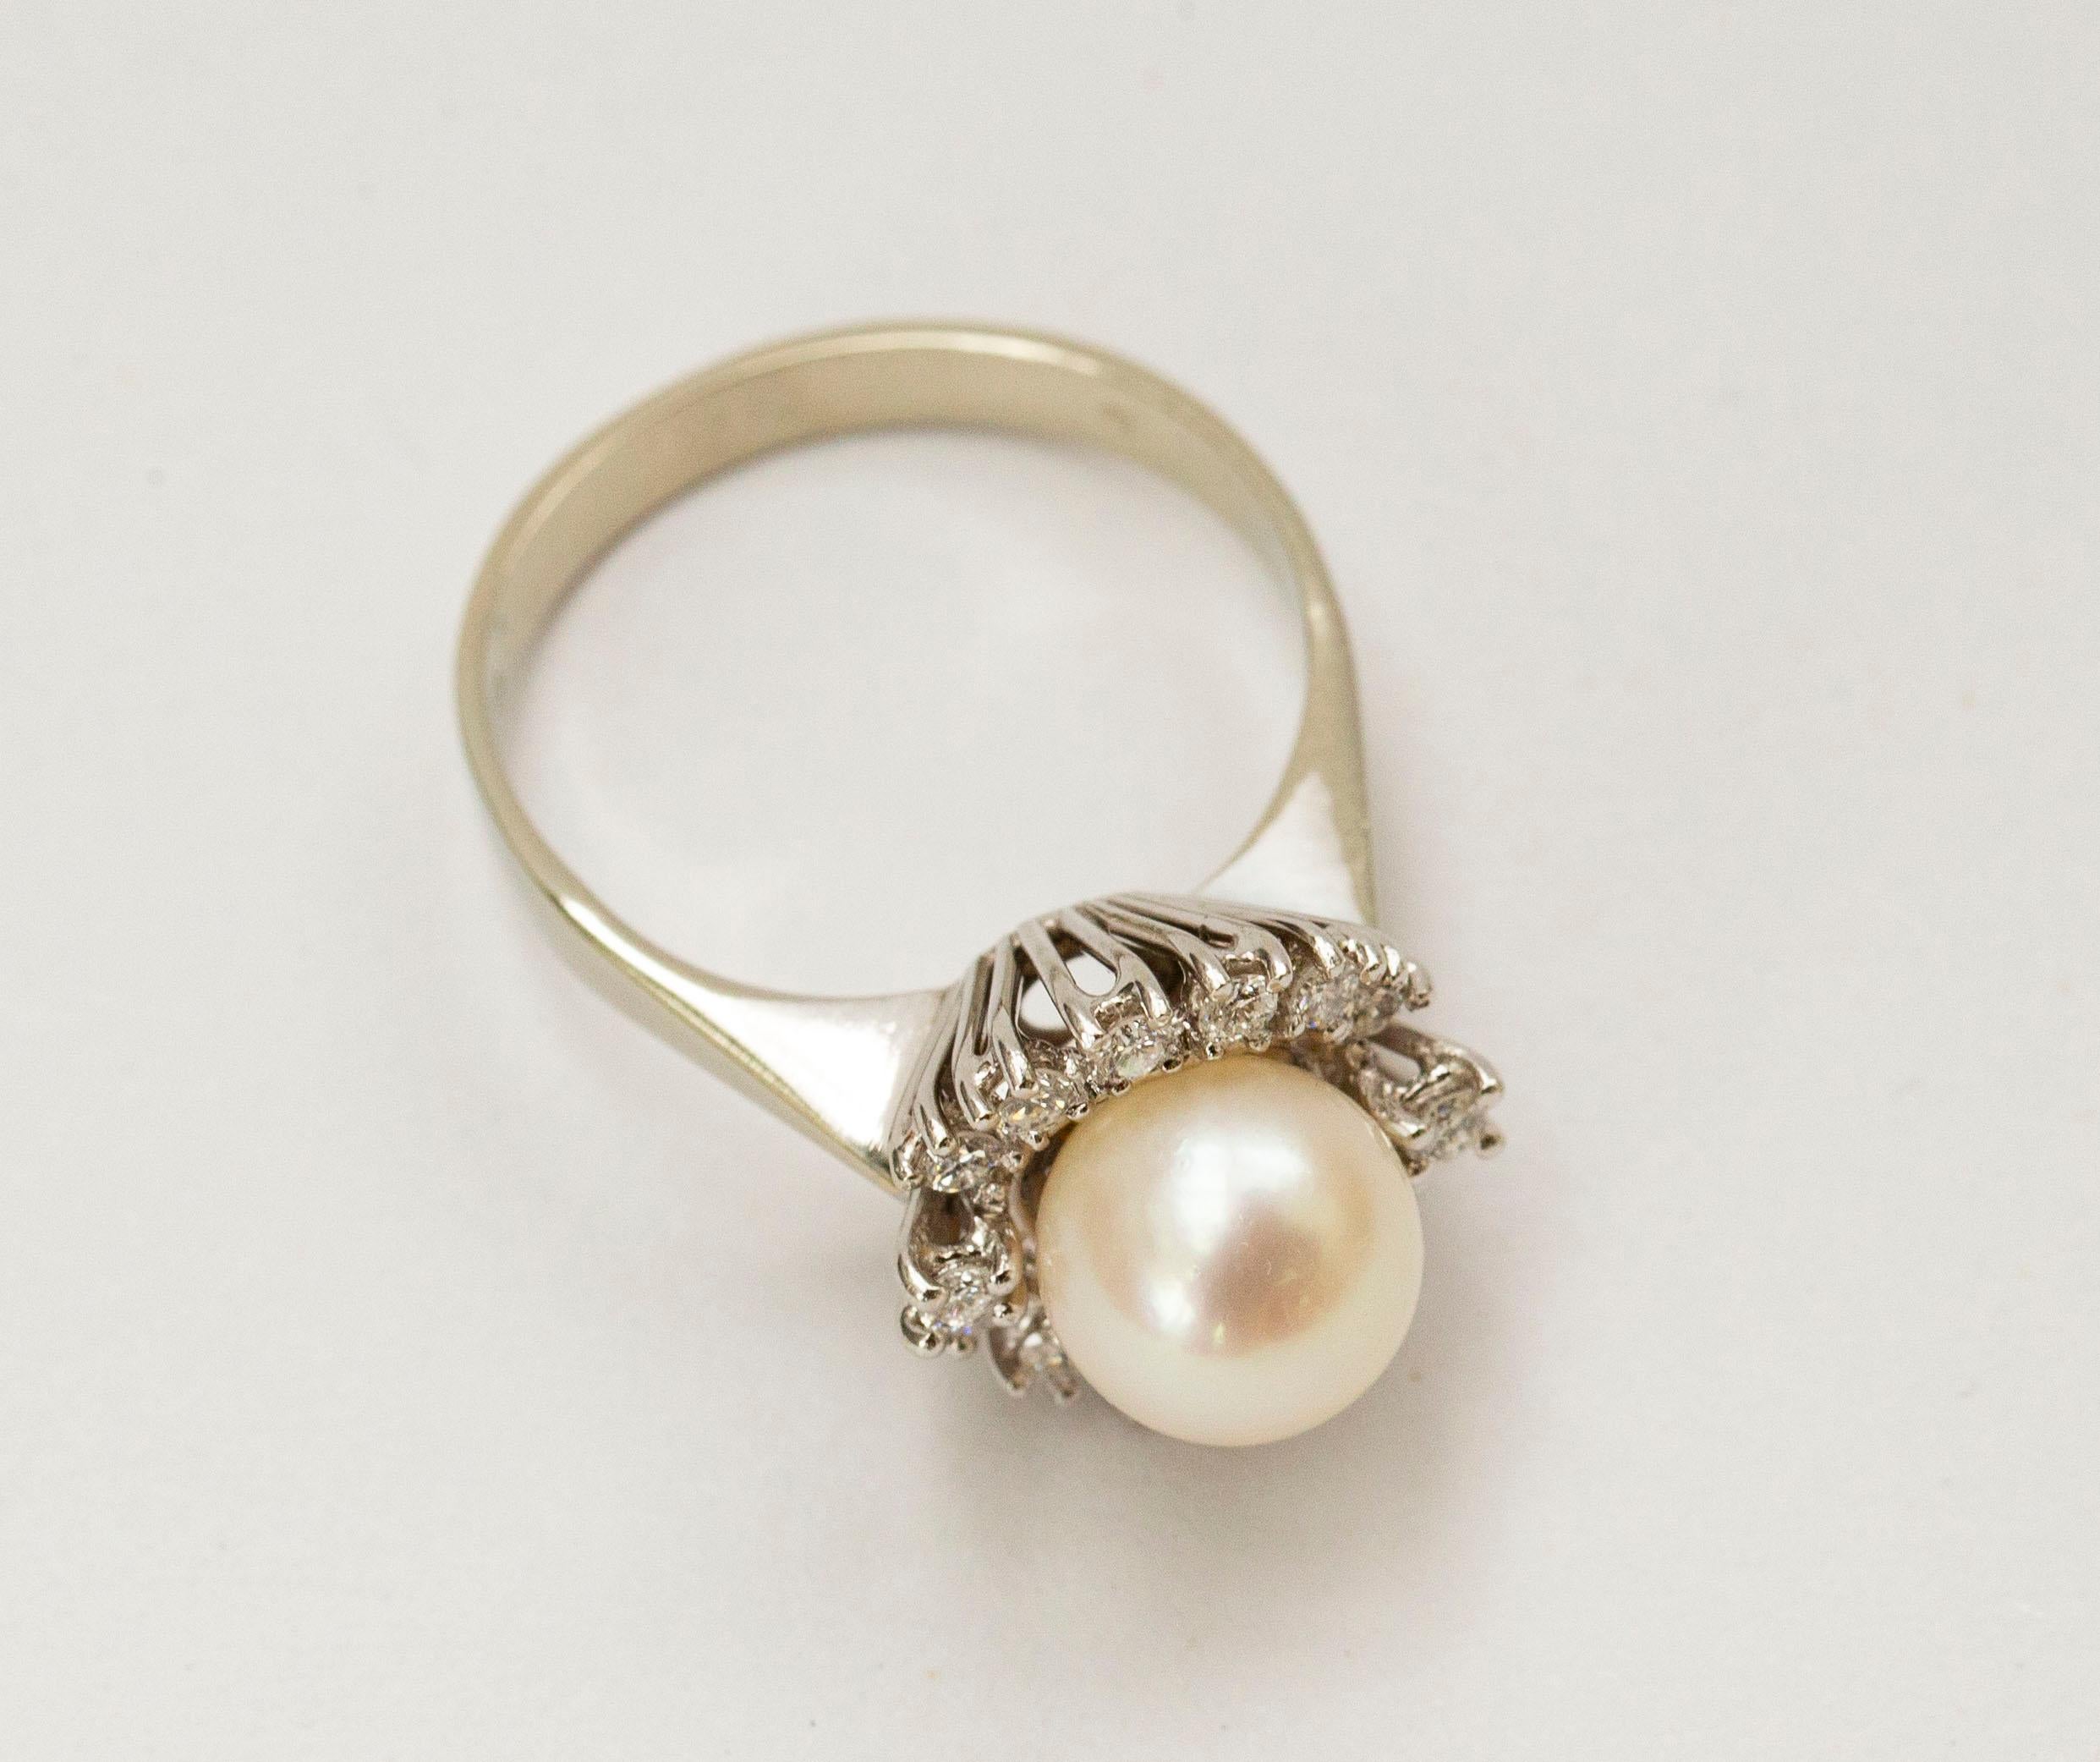 Ein Ring aus 18 kt. Weißgold mit einer Perlen- und Diamantenschar. Die zentrale Süßwasserperle ist von vierzehn Diamanten im Brillantschliff mit einem Gewicht von ca. 0,28 ct. umgeben. Der Ring ist mit 750 gestempelt, was für den 18-karätigen